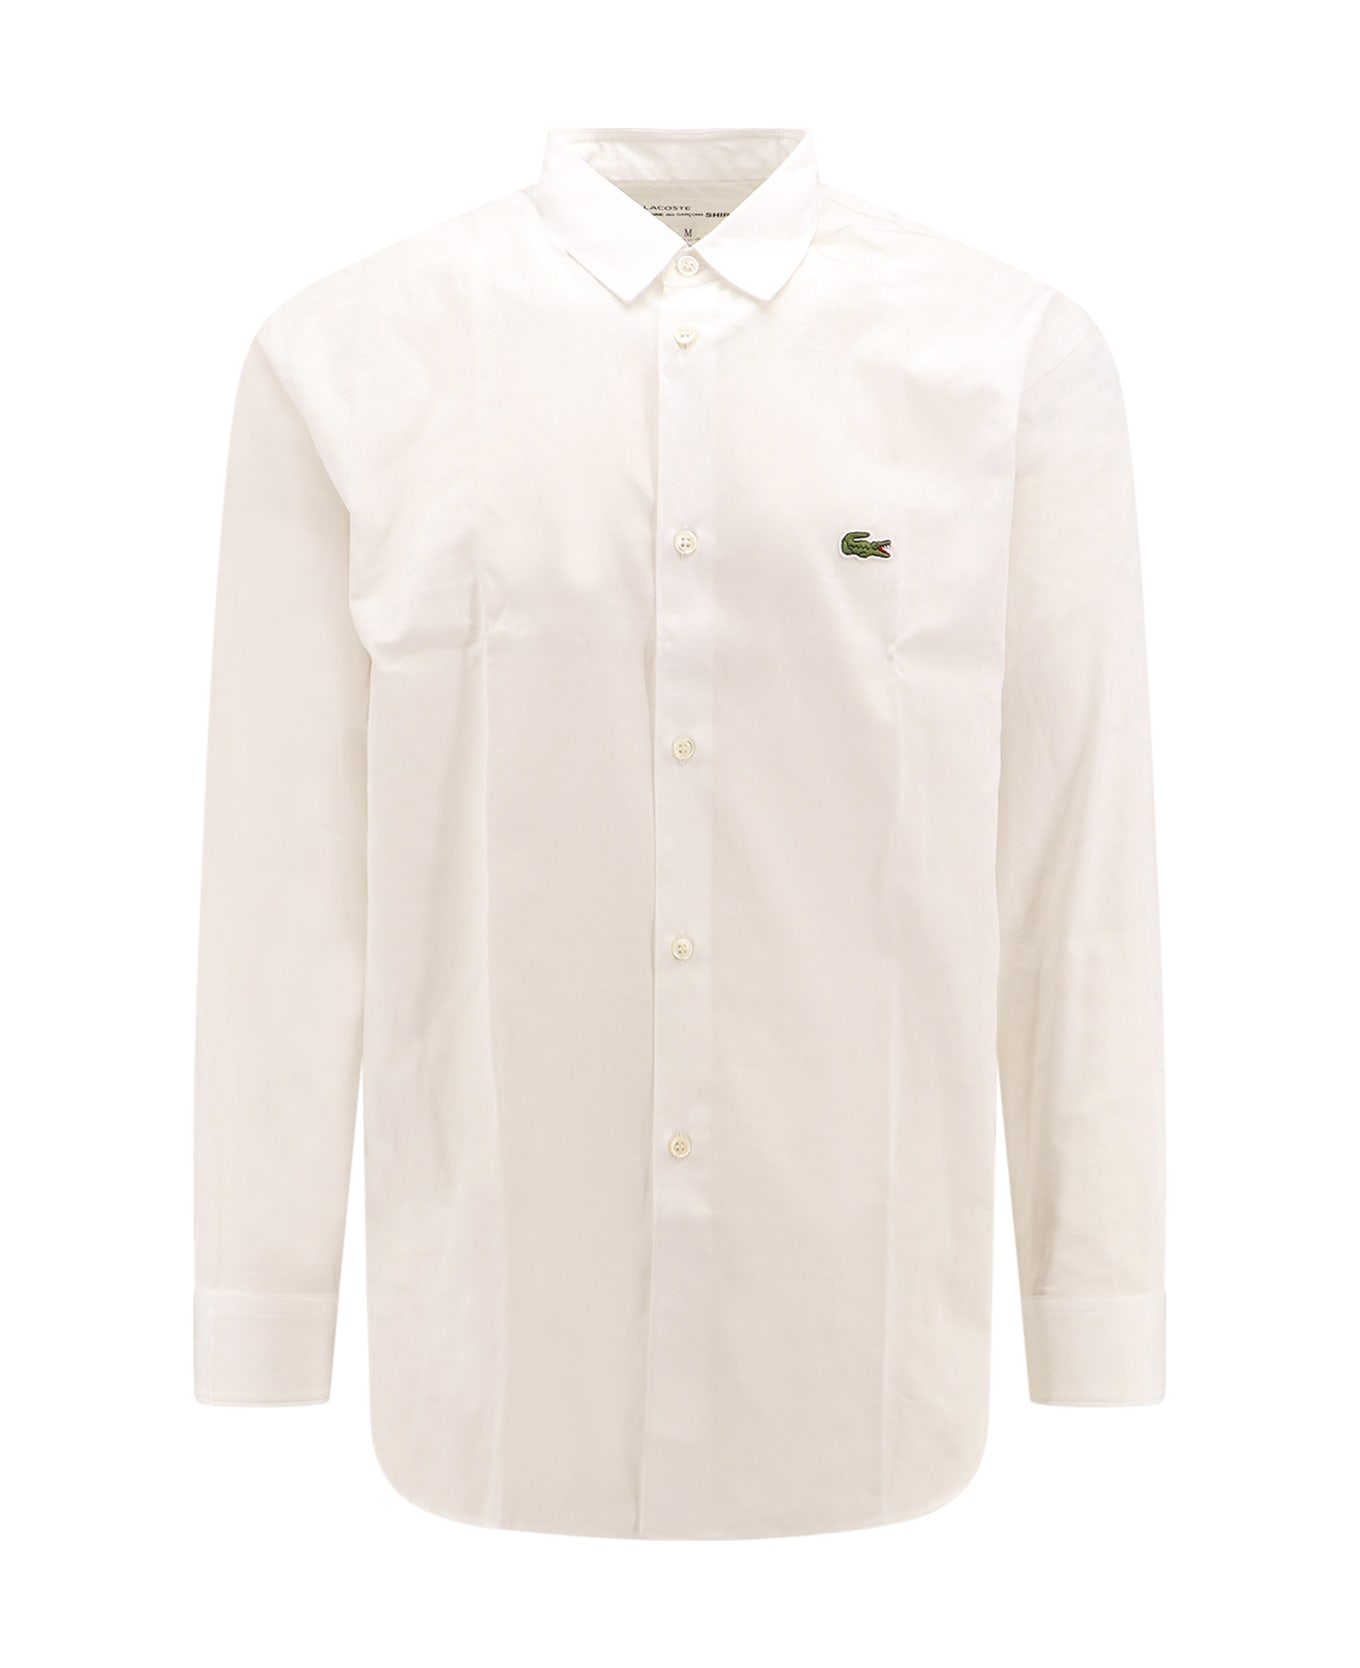 Comme des Garçons Shirt Shirt - White シャツ